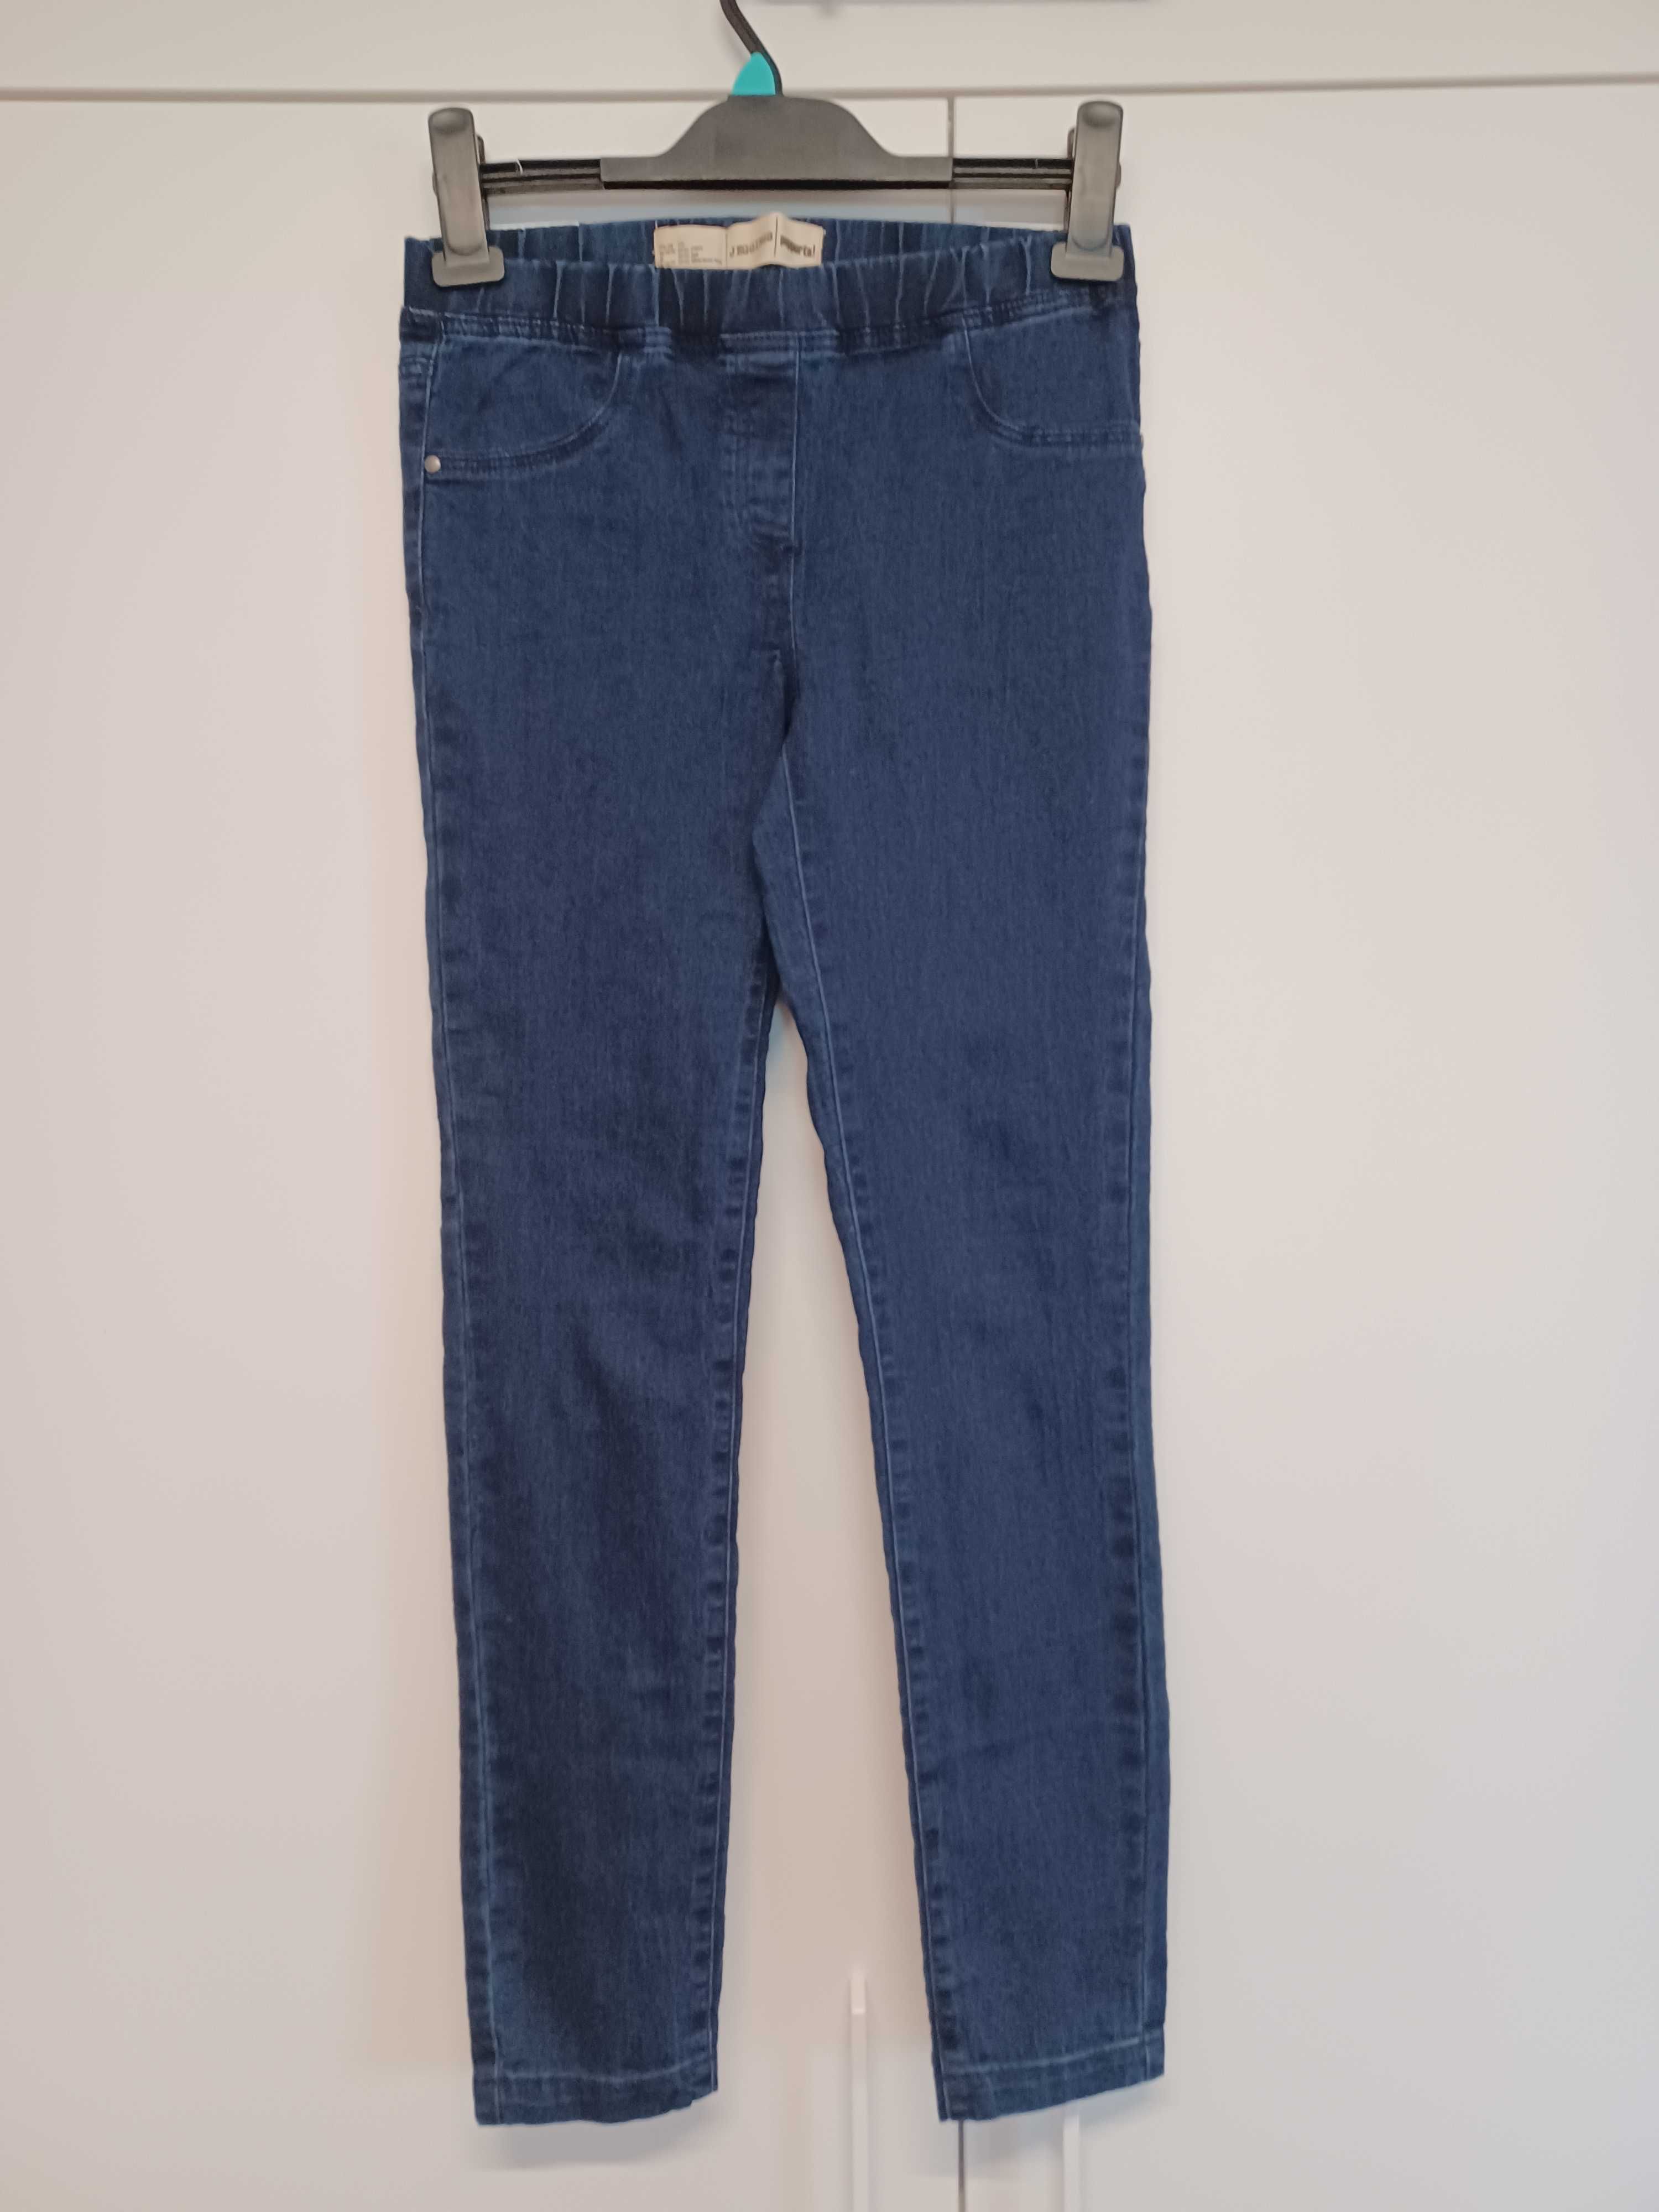 Spodnie dziewczęce jeansowe / jegginsy - rozmiar 146 cm